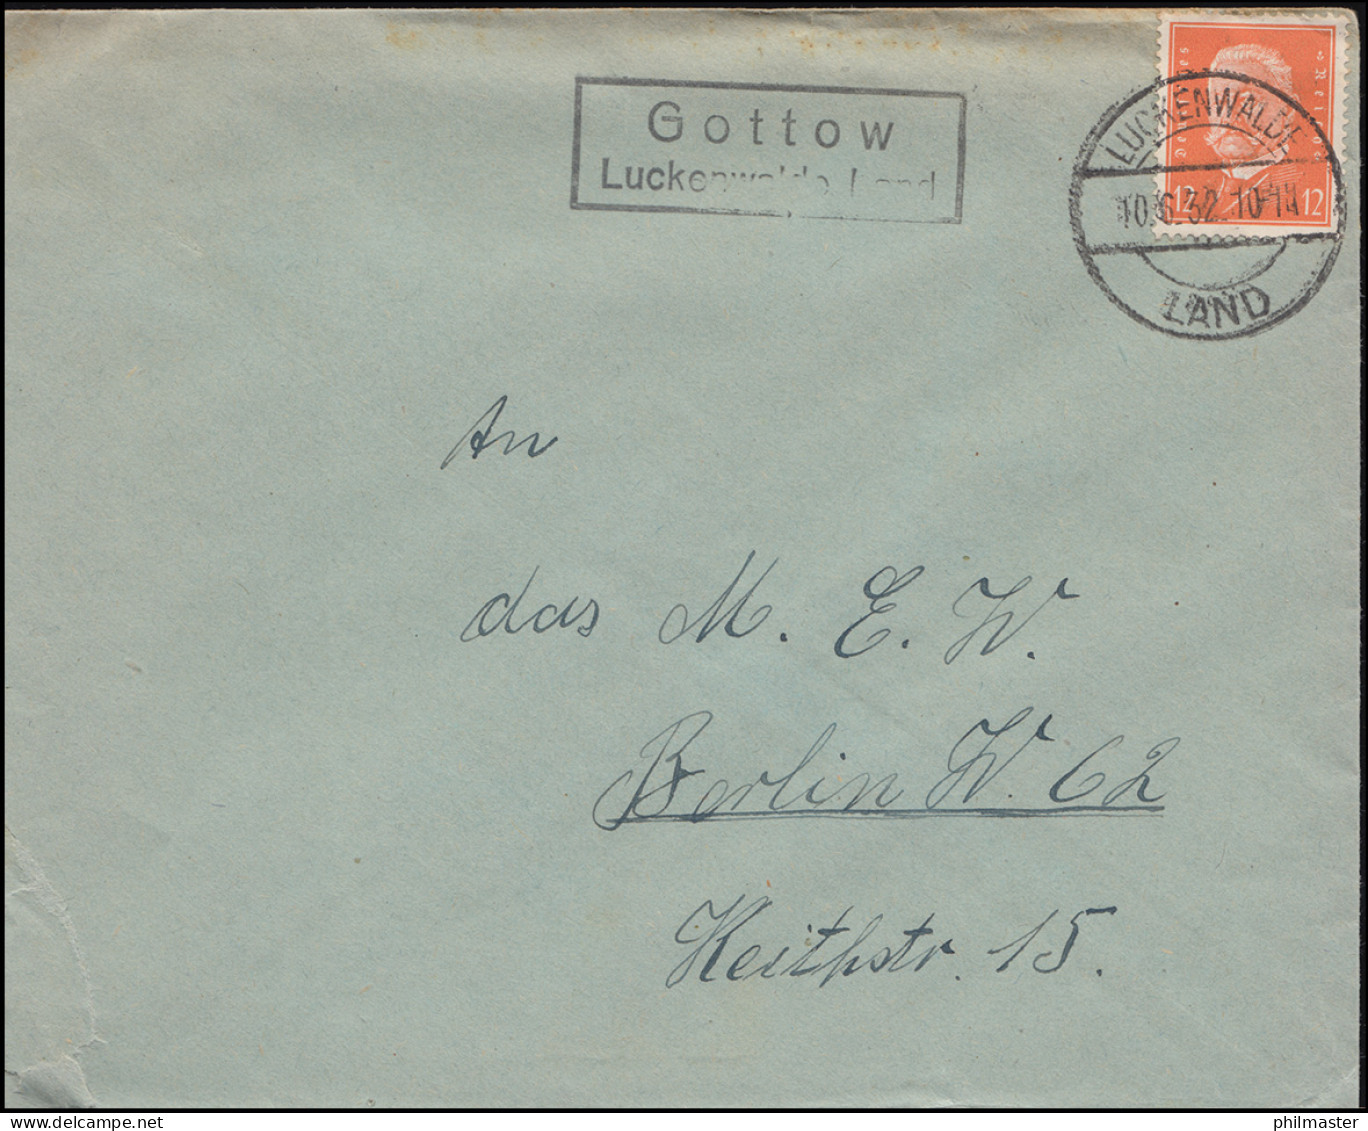 Landpost Gottow über Luckenwalde / Land 10.6.32 Auf Brief  - Briefe U. Dokumente